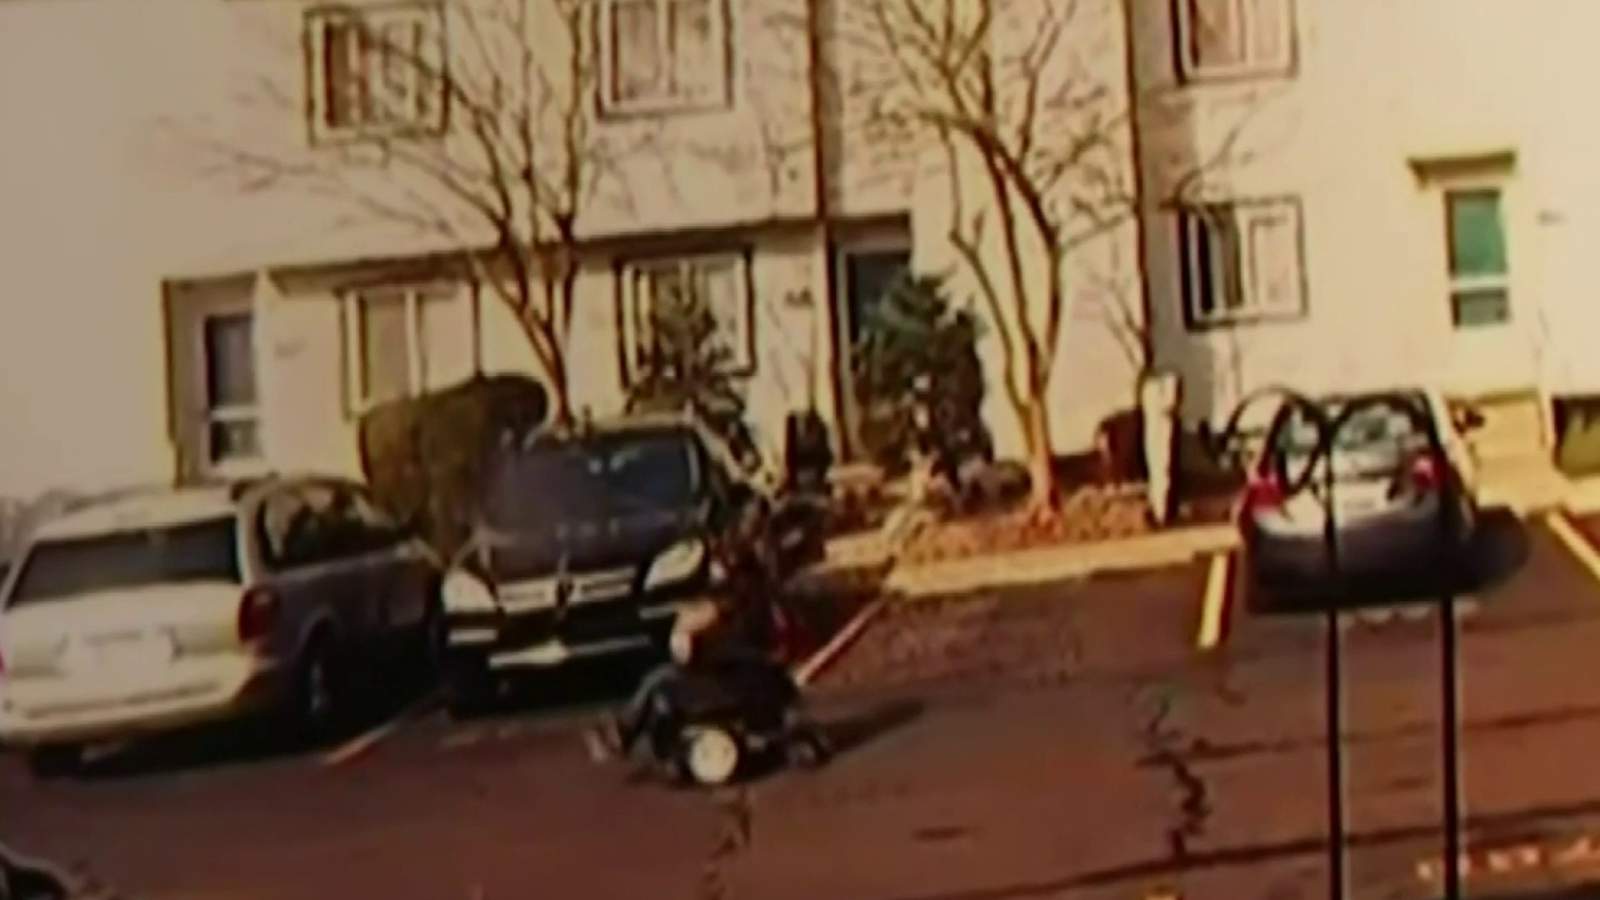 Thief steals woman’s motorized wheelchair in Ann Arbor